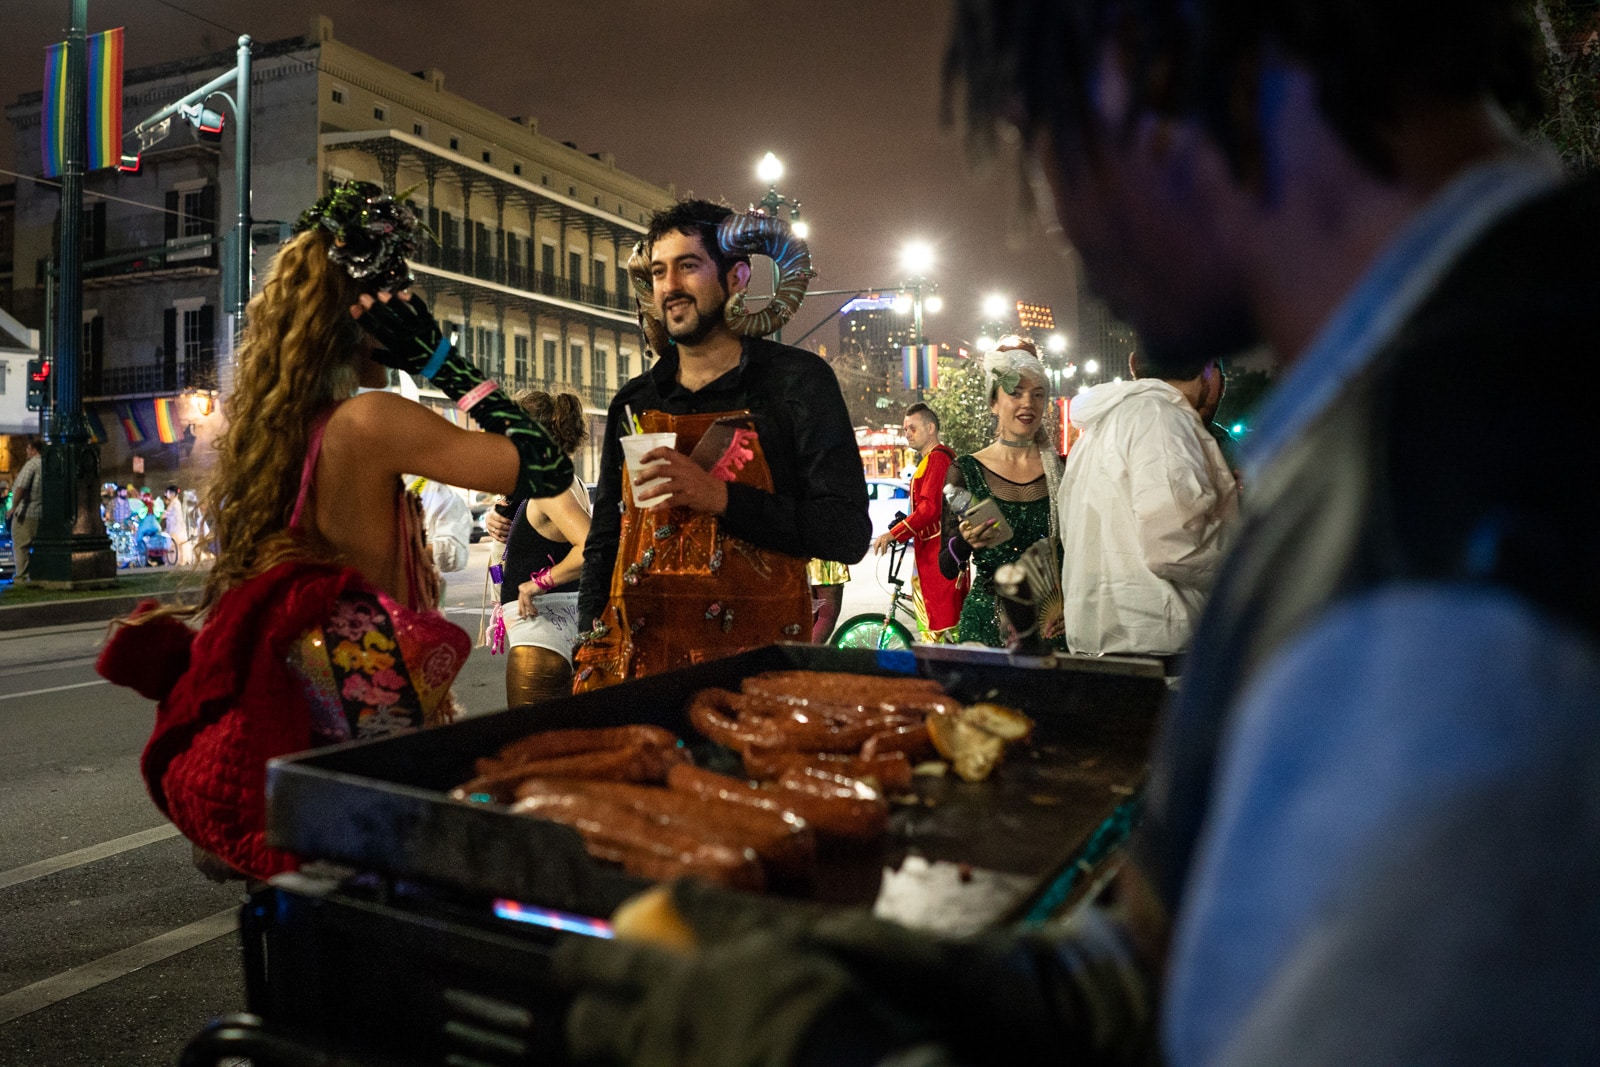 People in costume ordering street food in New Orleans, LA